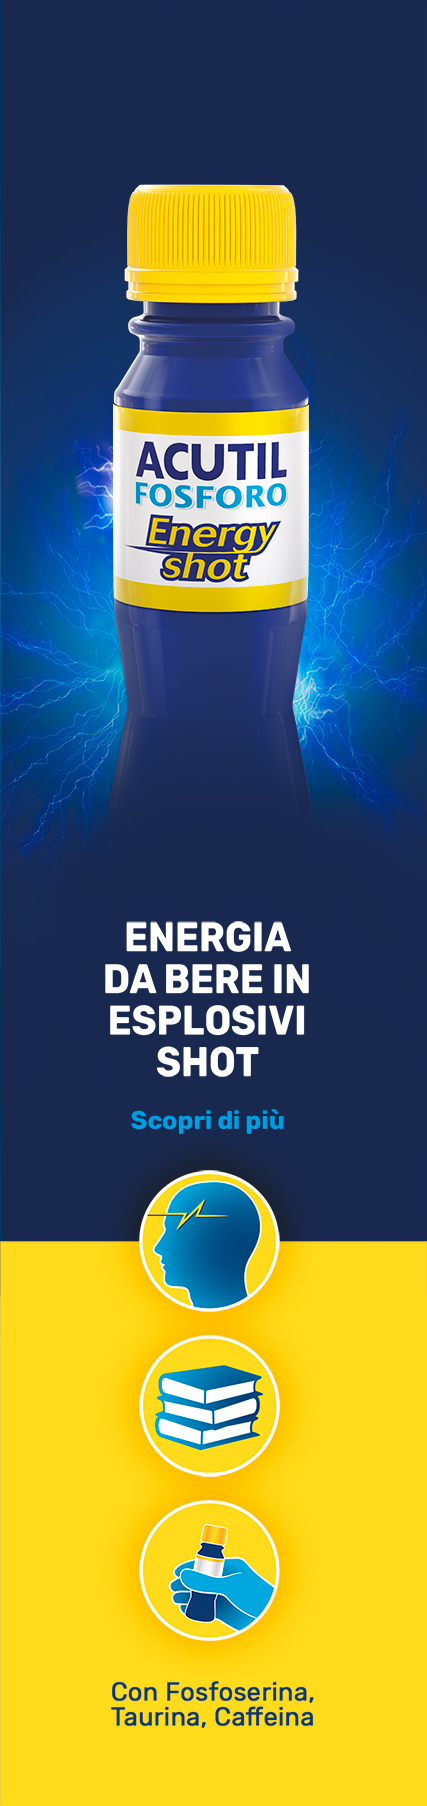 Acutil Fosforo Energy Shot. Energia da bere in esplosivi shot